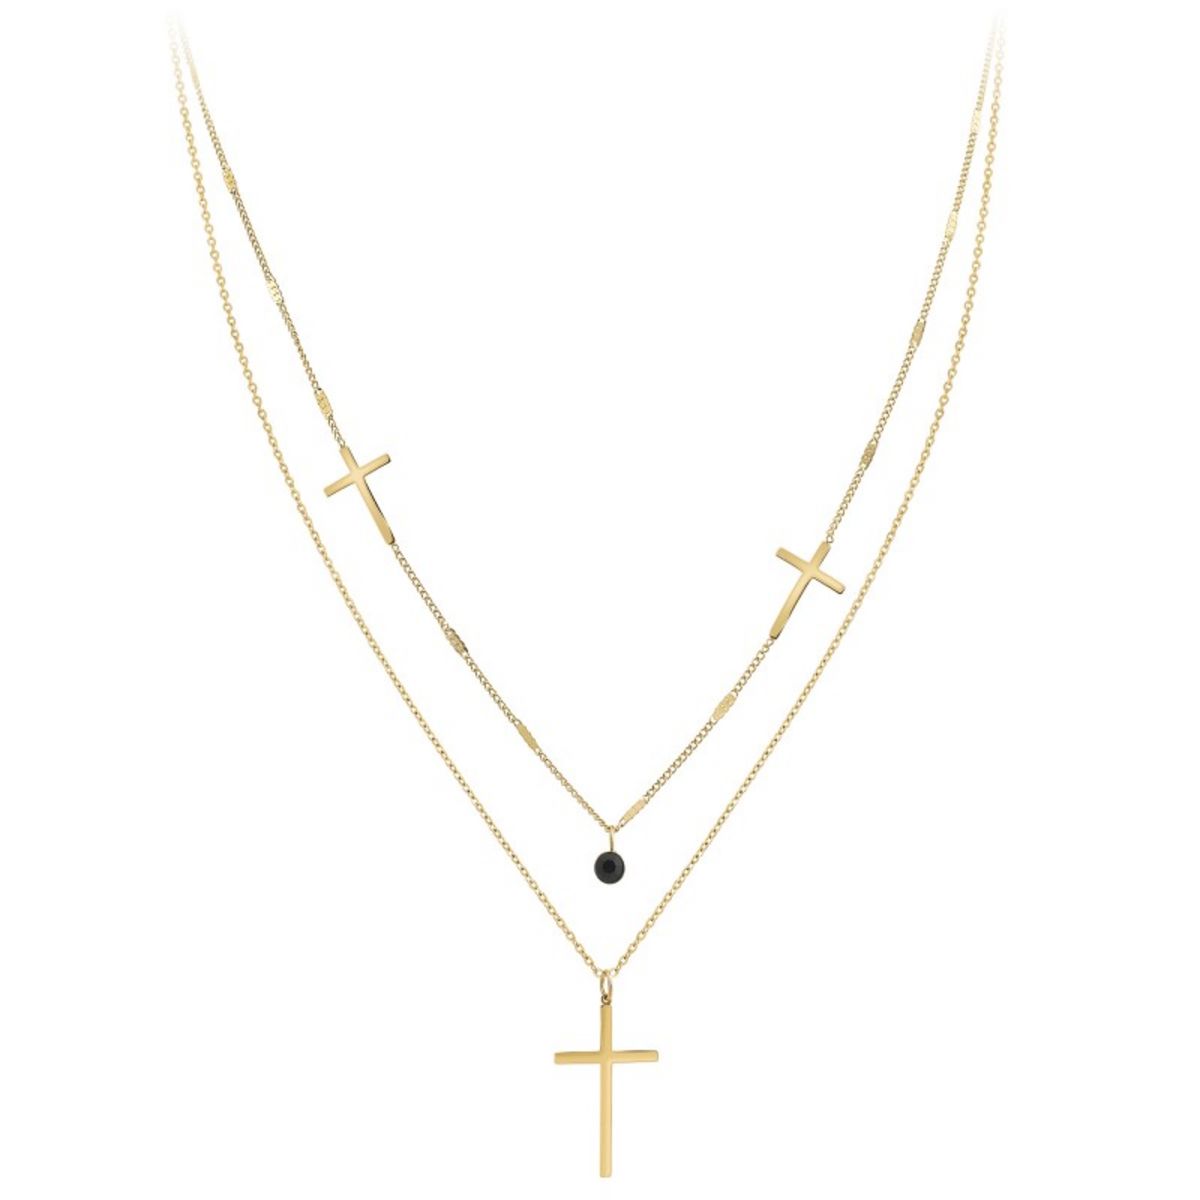  Collier croix par SC Bohème orné d'un Cristal scintillant